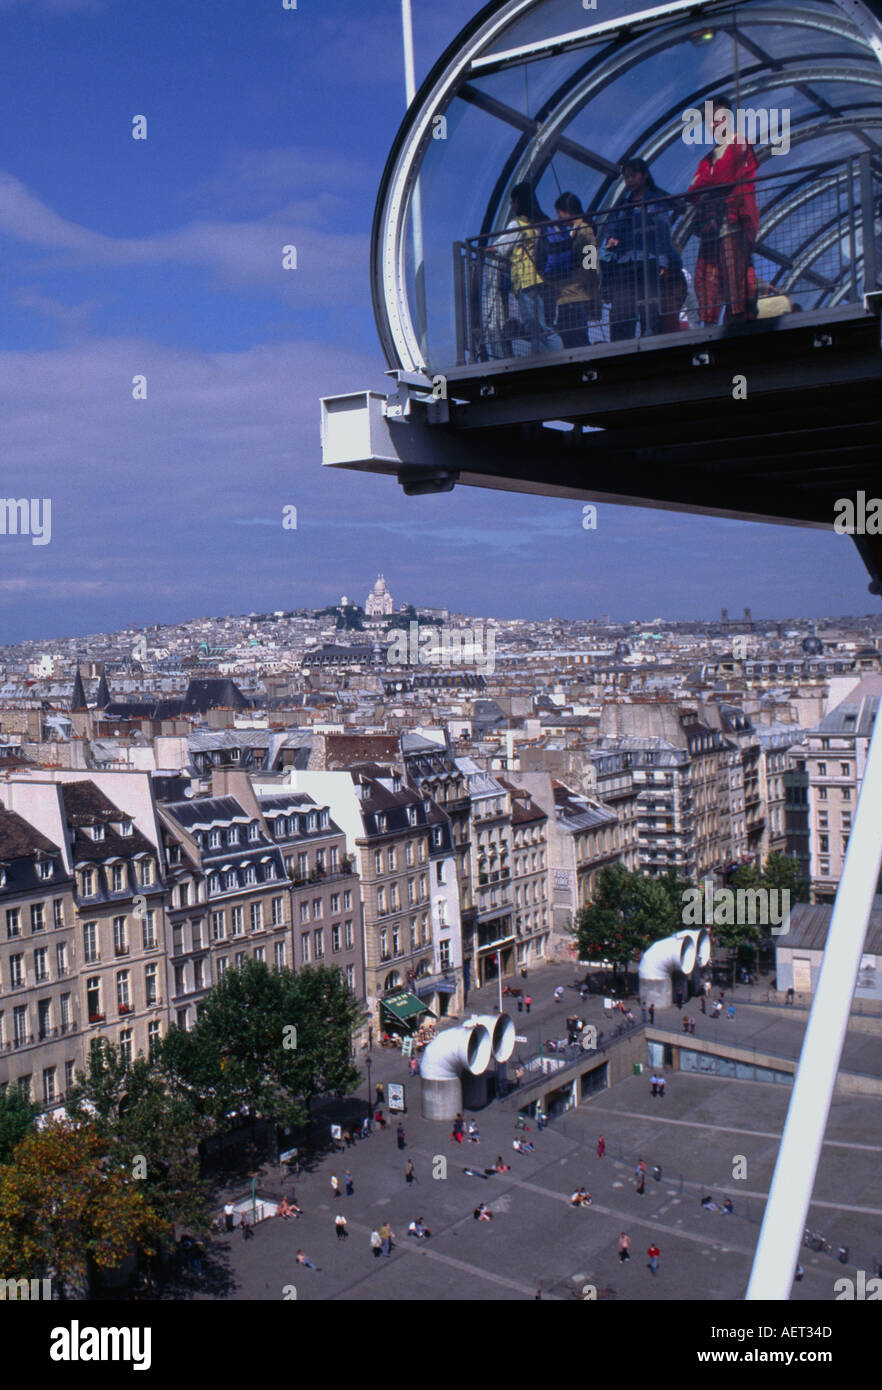 France Paris 4em centre Beaubourg pompidou skyline de paris avec des gens debout derrière une fenêtre en verre en haut des escaliers à la verticale Banque D'Images